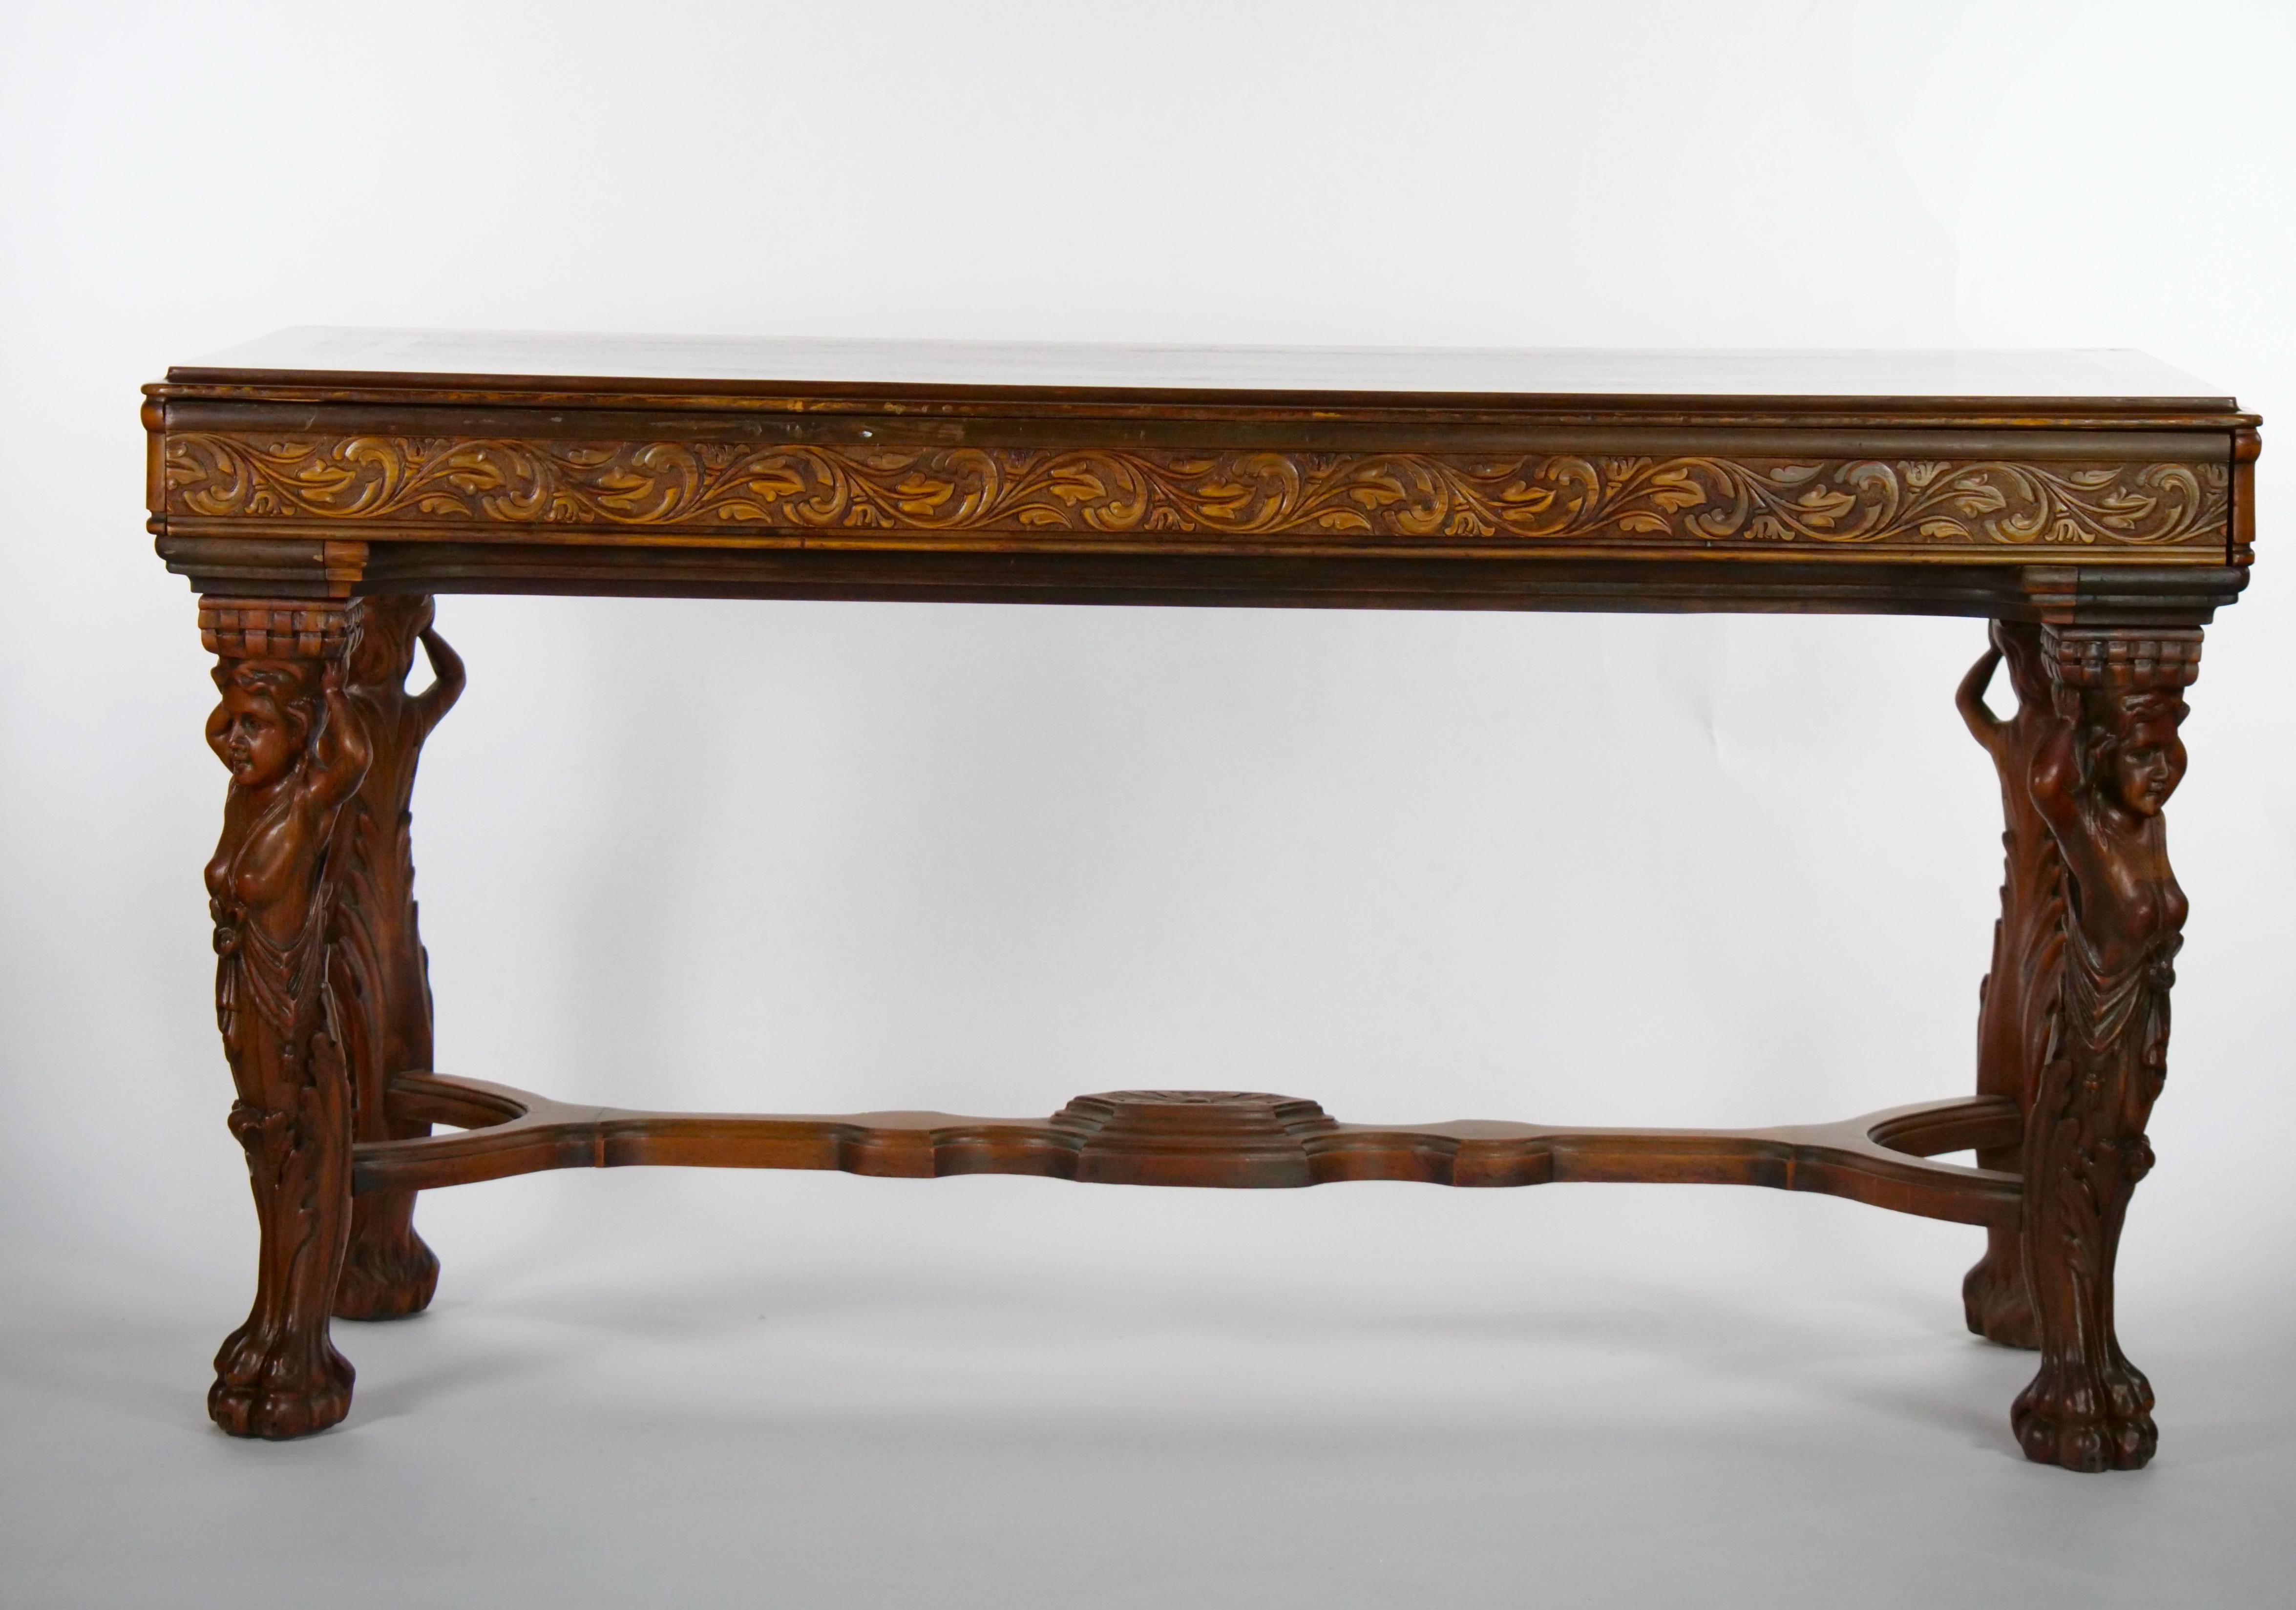 Acajou de belle facture  Console / table de centre de style Chippendale du 19ème siècle en noyer sculpté à la main et incrusté.  La table est dotée de pieds cabriole à trous, lourdement sculptés à la main, et de pieds en patte d'oie. Il est d'une